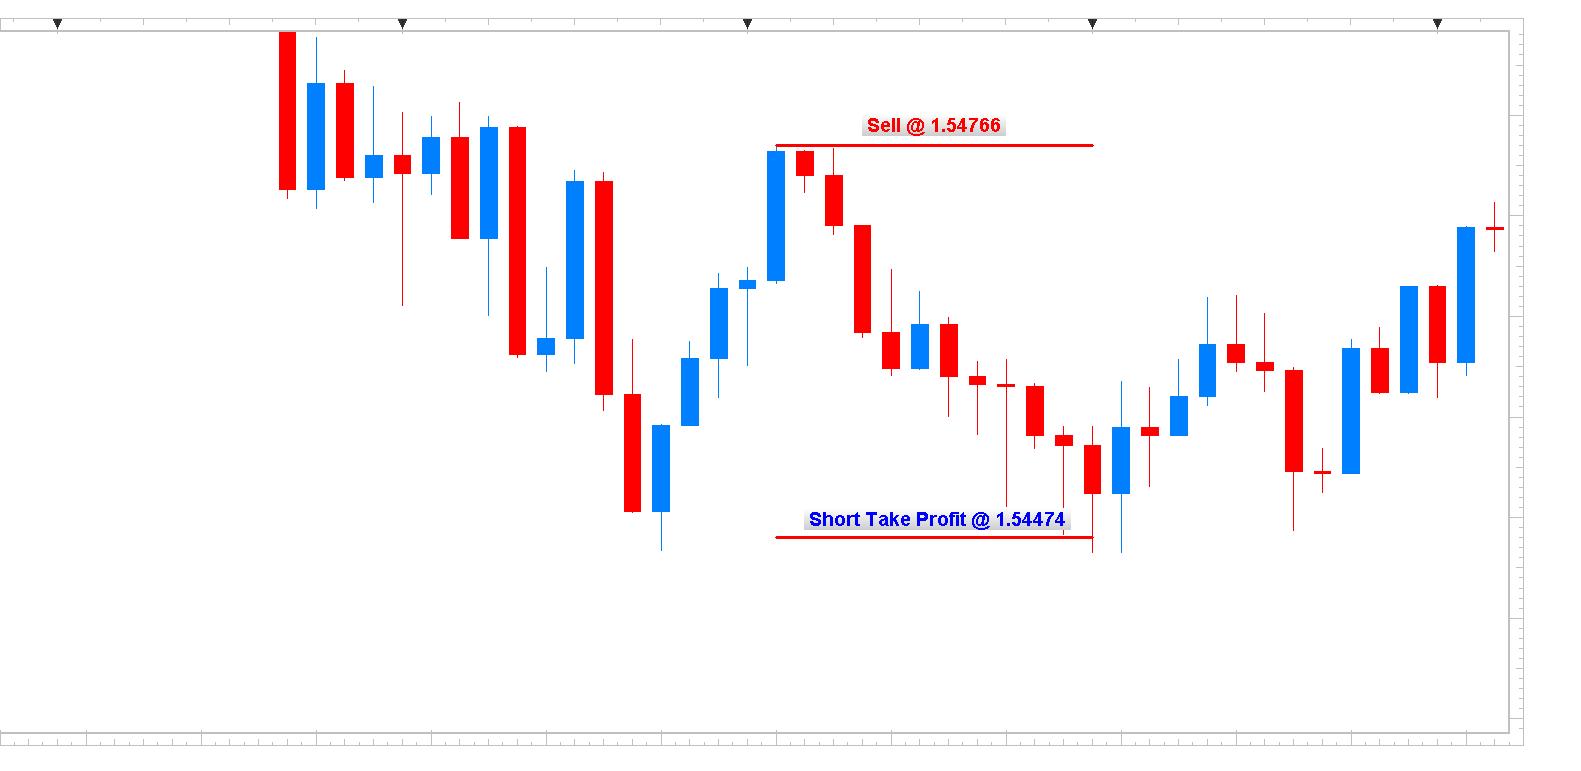 GBP/USD 5min Chart